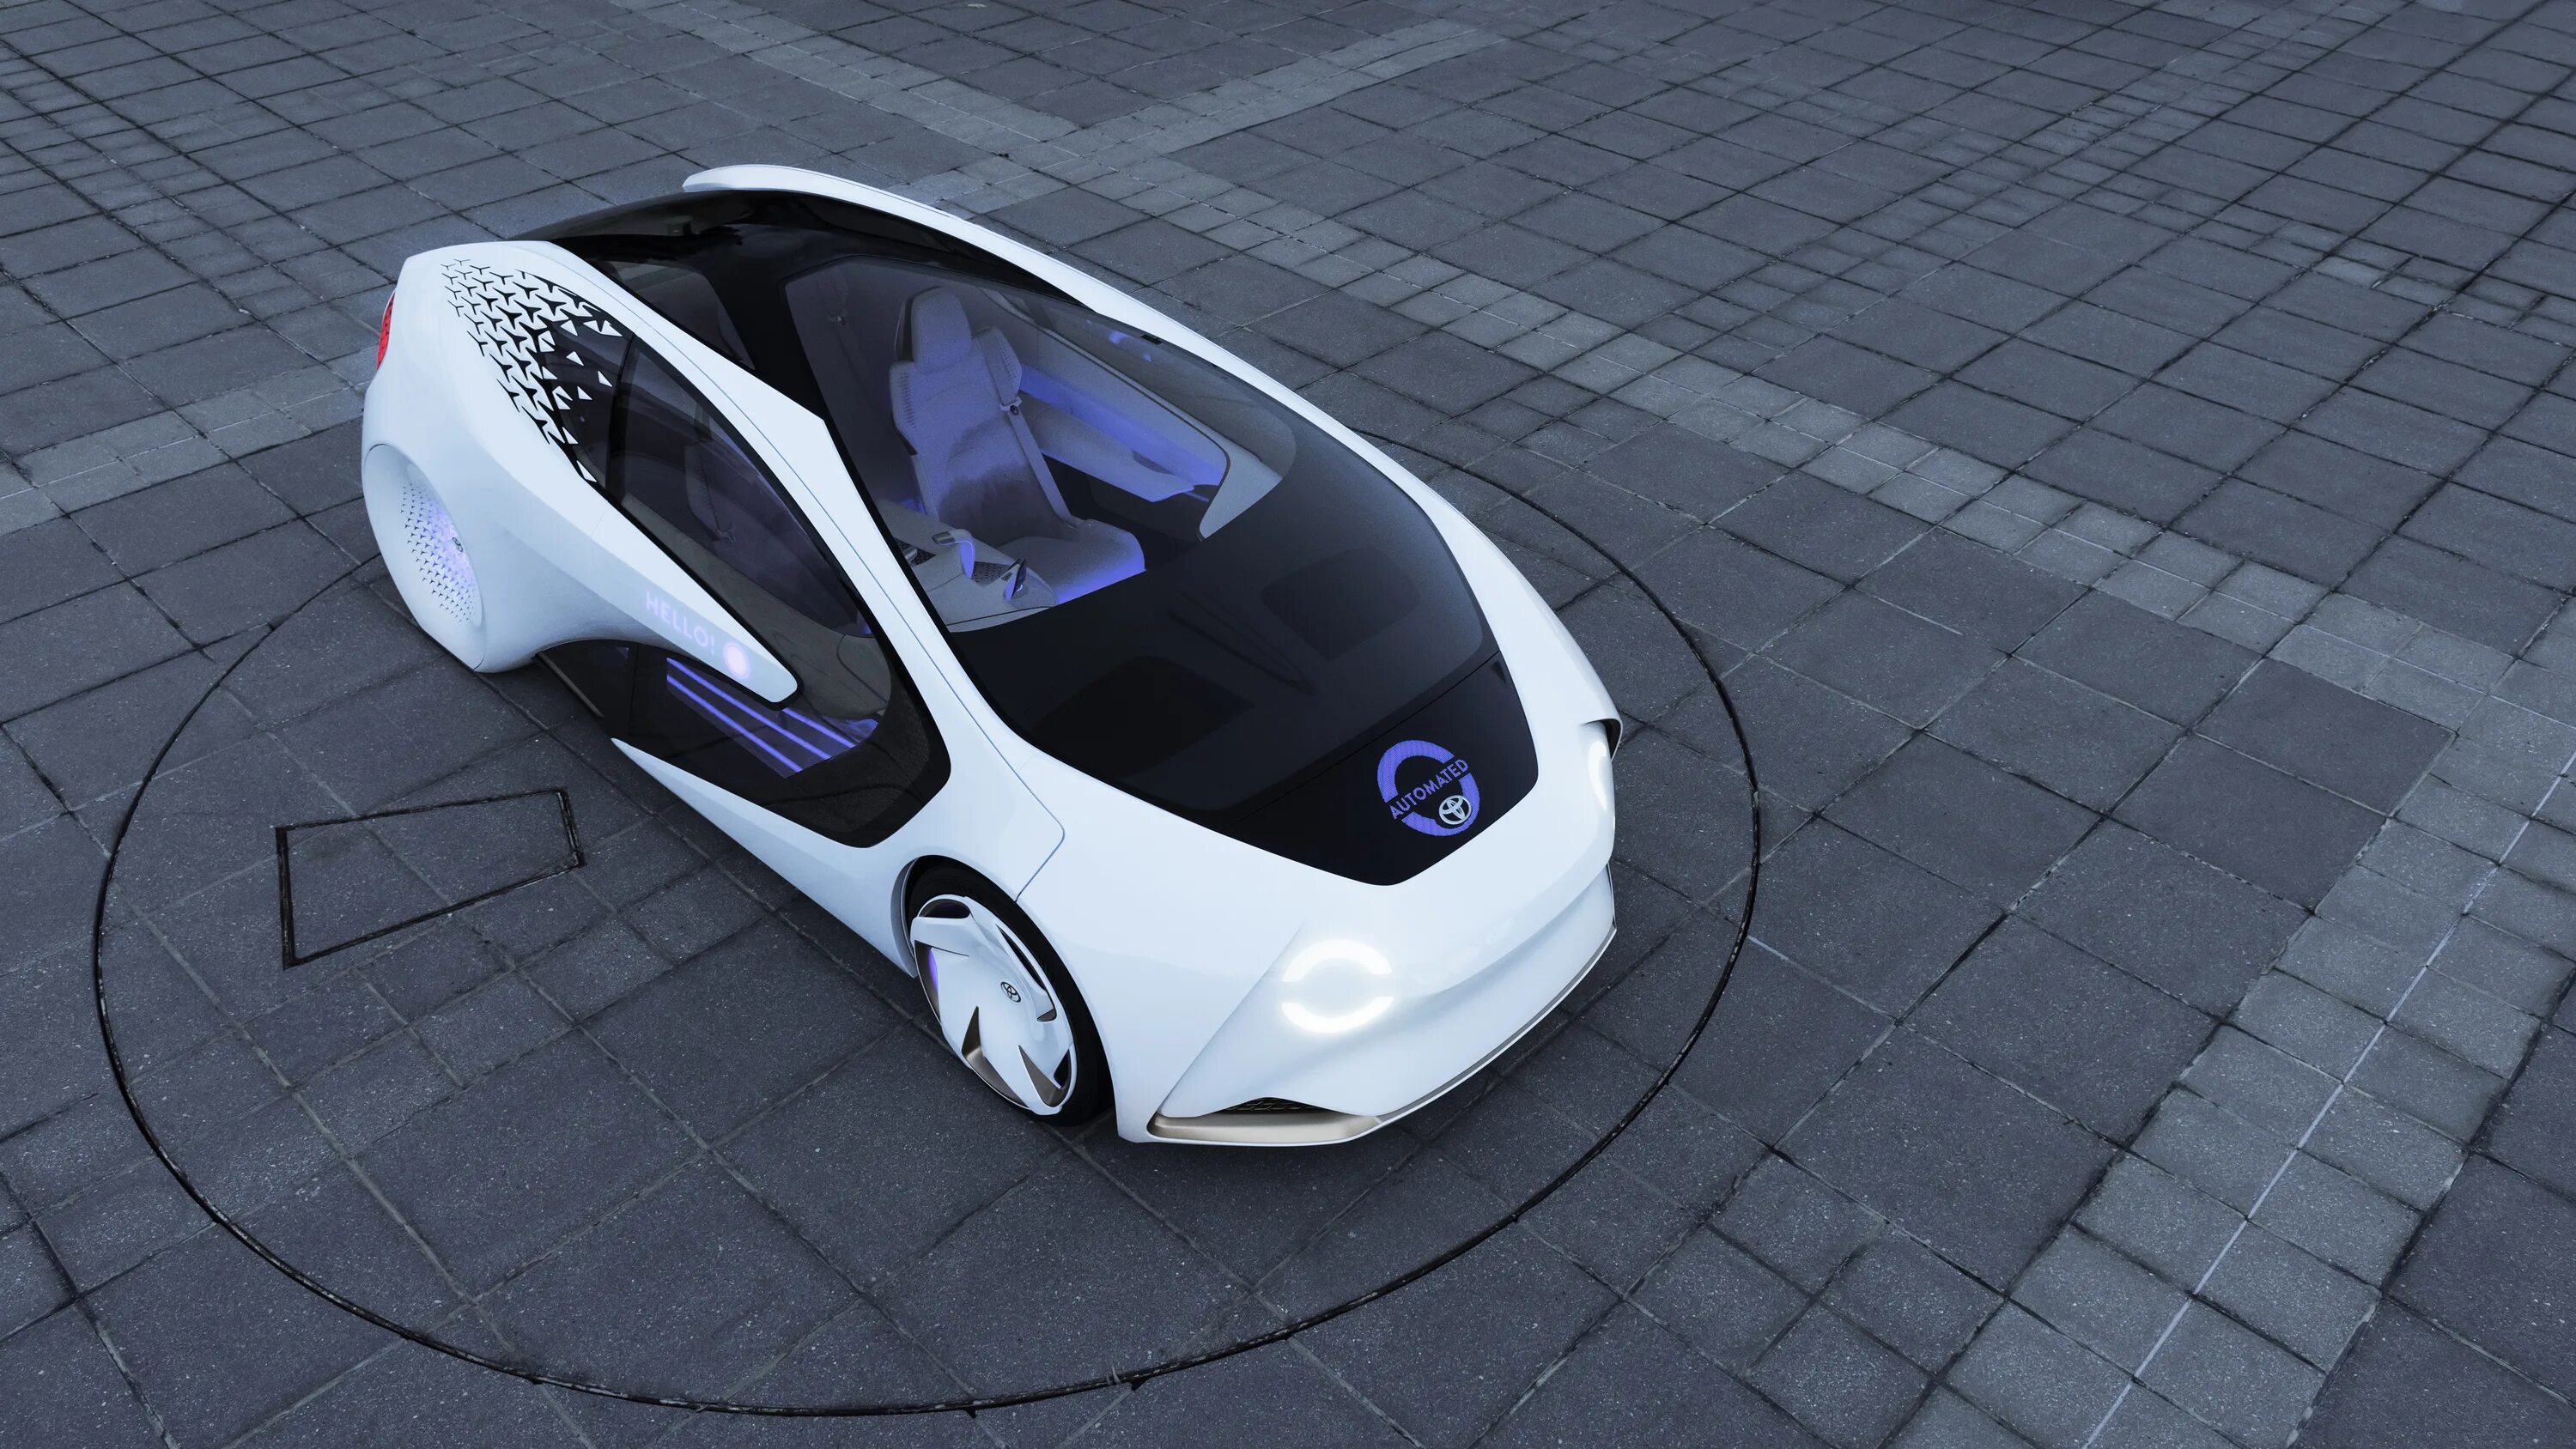 1 электронной автомобилей. Toyota Concept-i. Toyota Concept-1. Автомобиль будущего экологичный. Электрокар концепт.